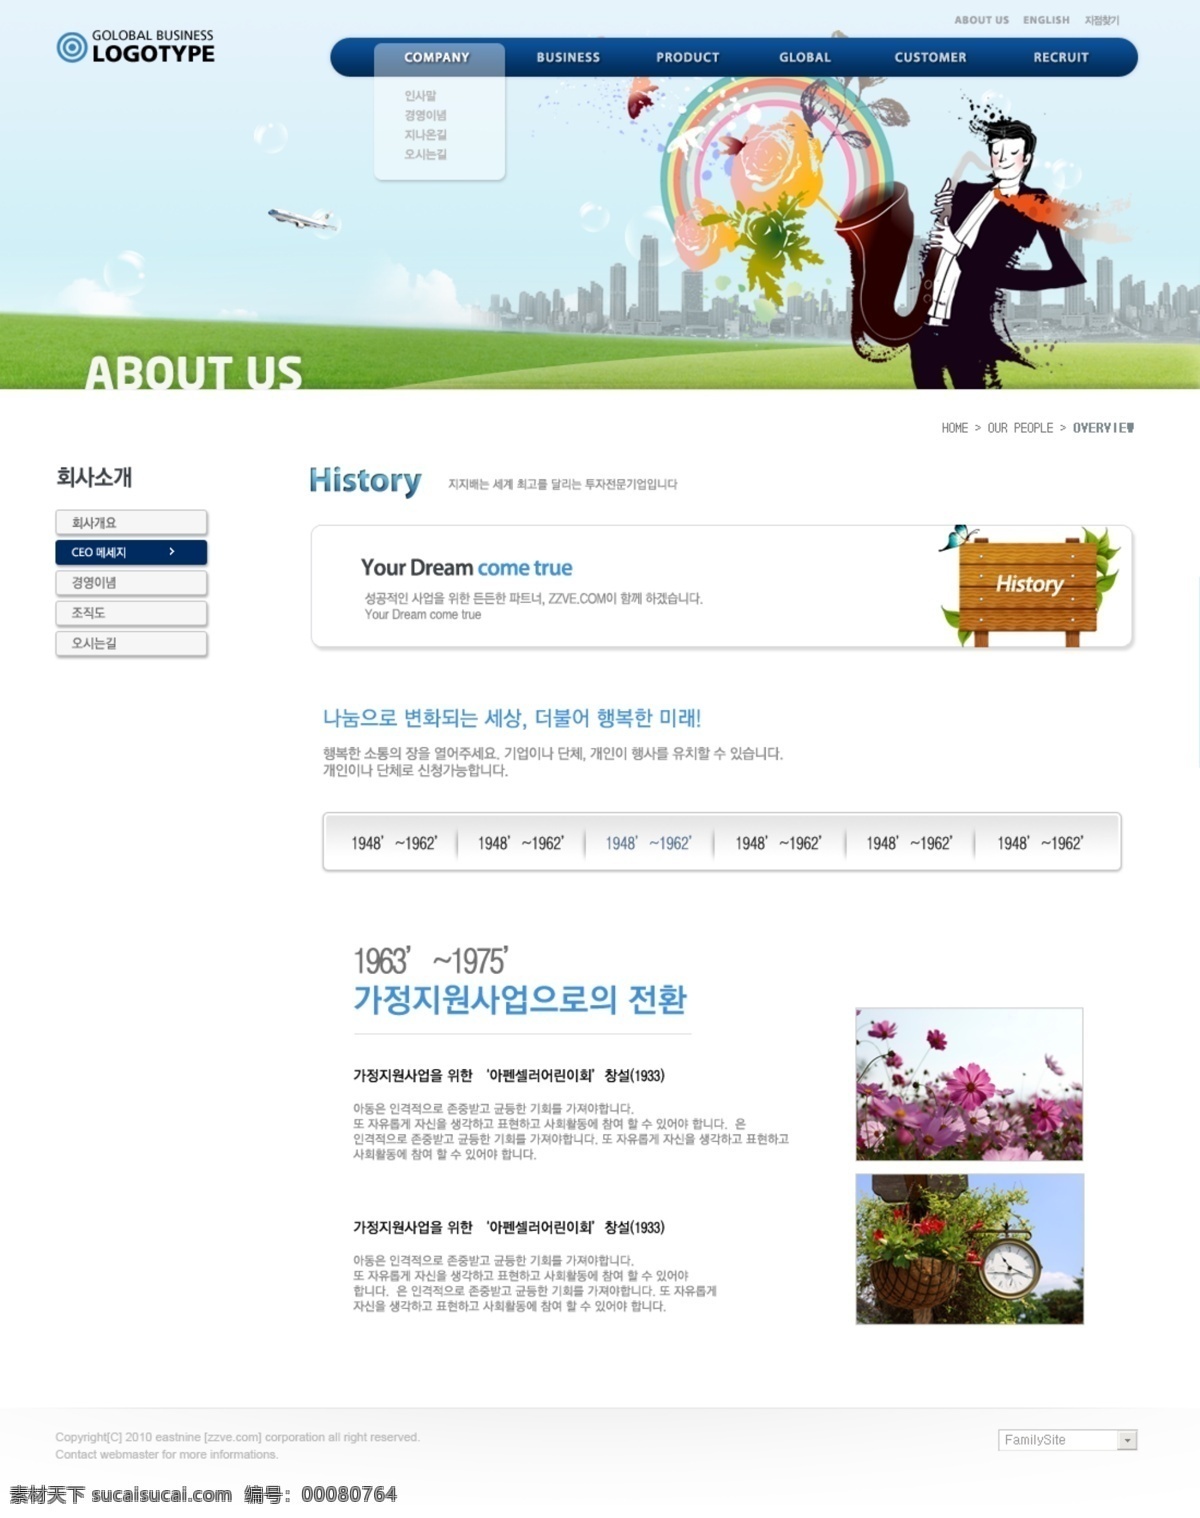 卡通 插画 网页设计 公司网站 韩国网页 界面设计 卡通插画 蓝色风格 蓝色模板 手绘模板 网页界面 网页模板 韩国城市 网页素材